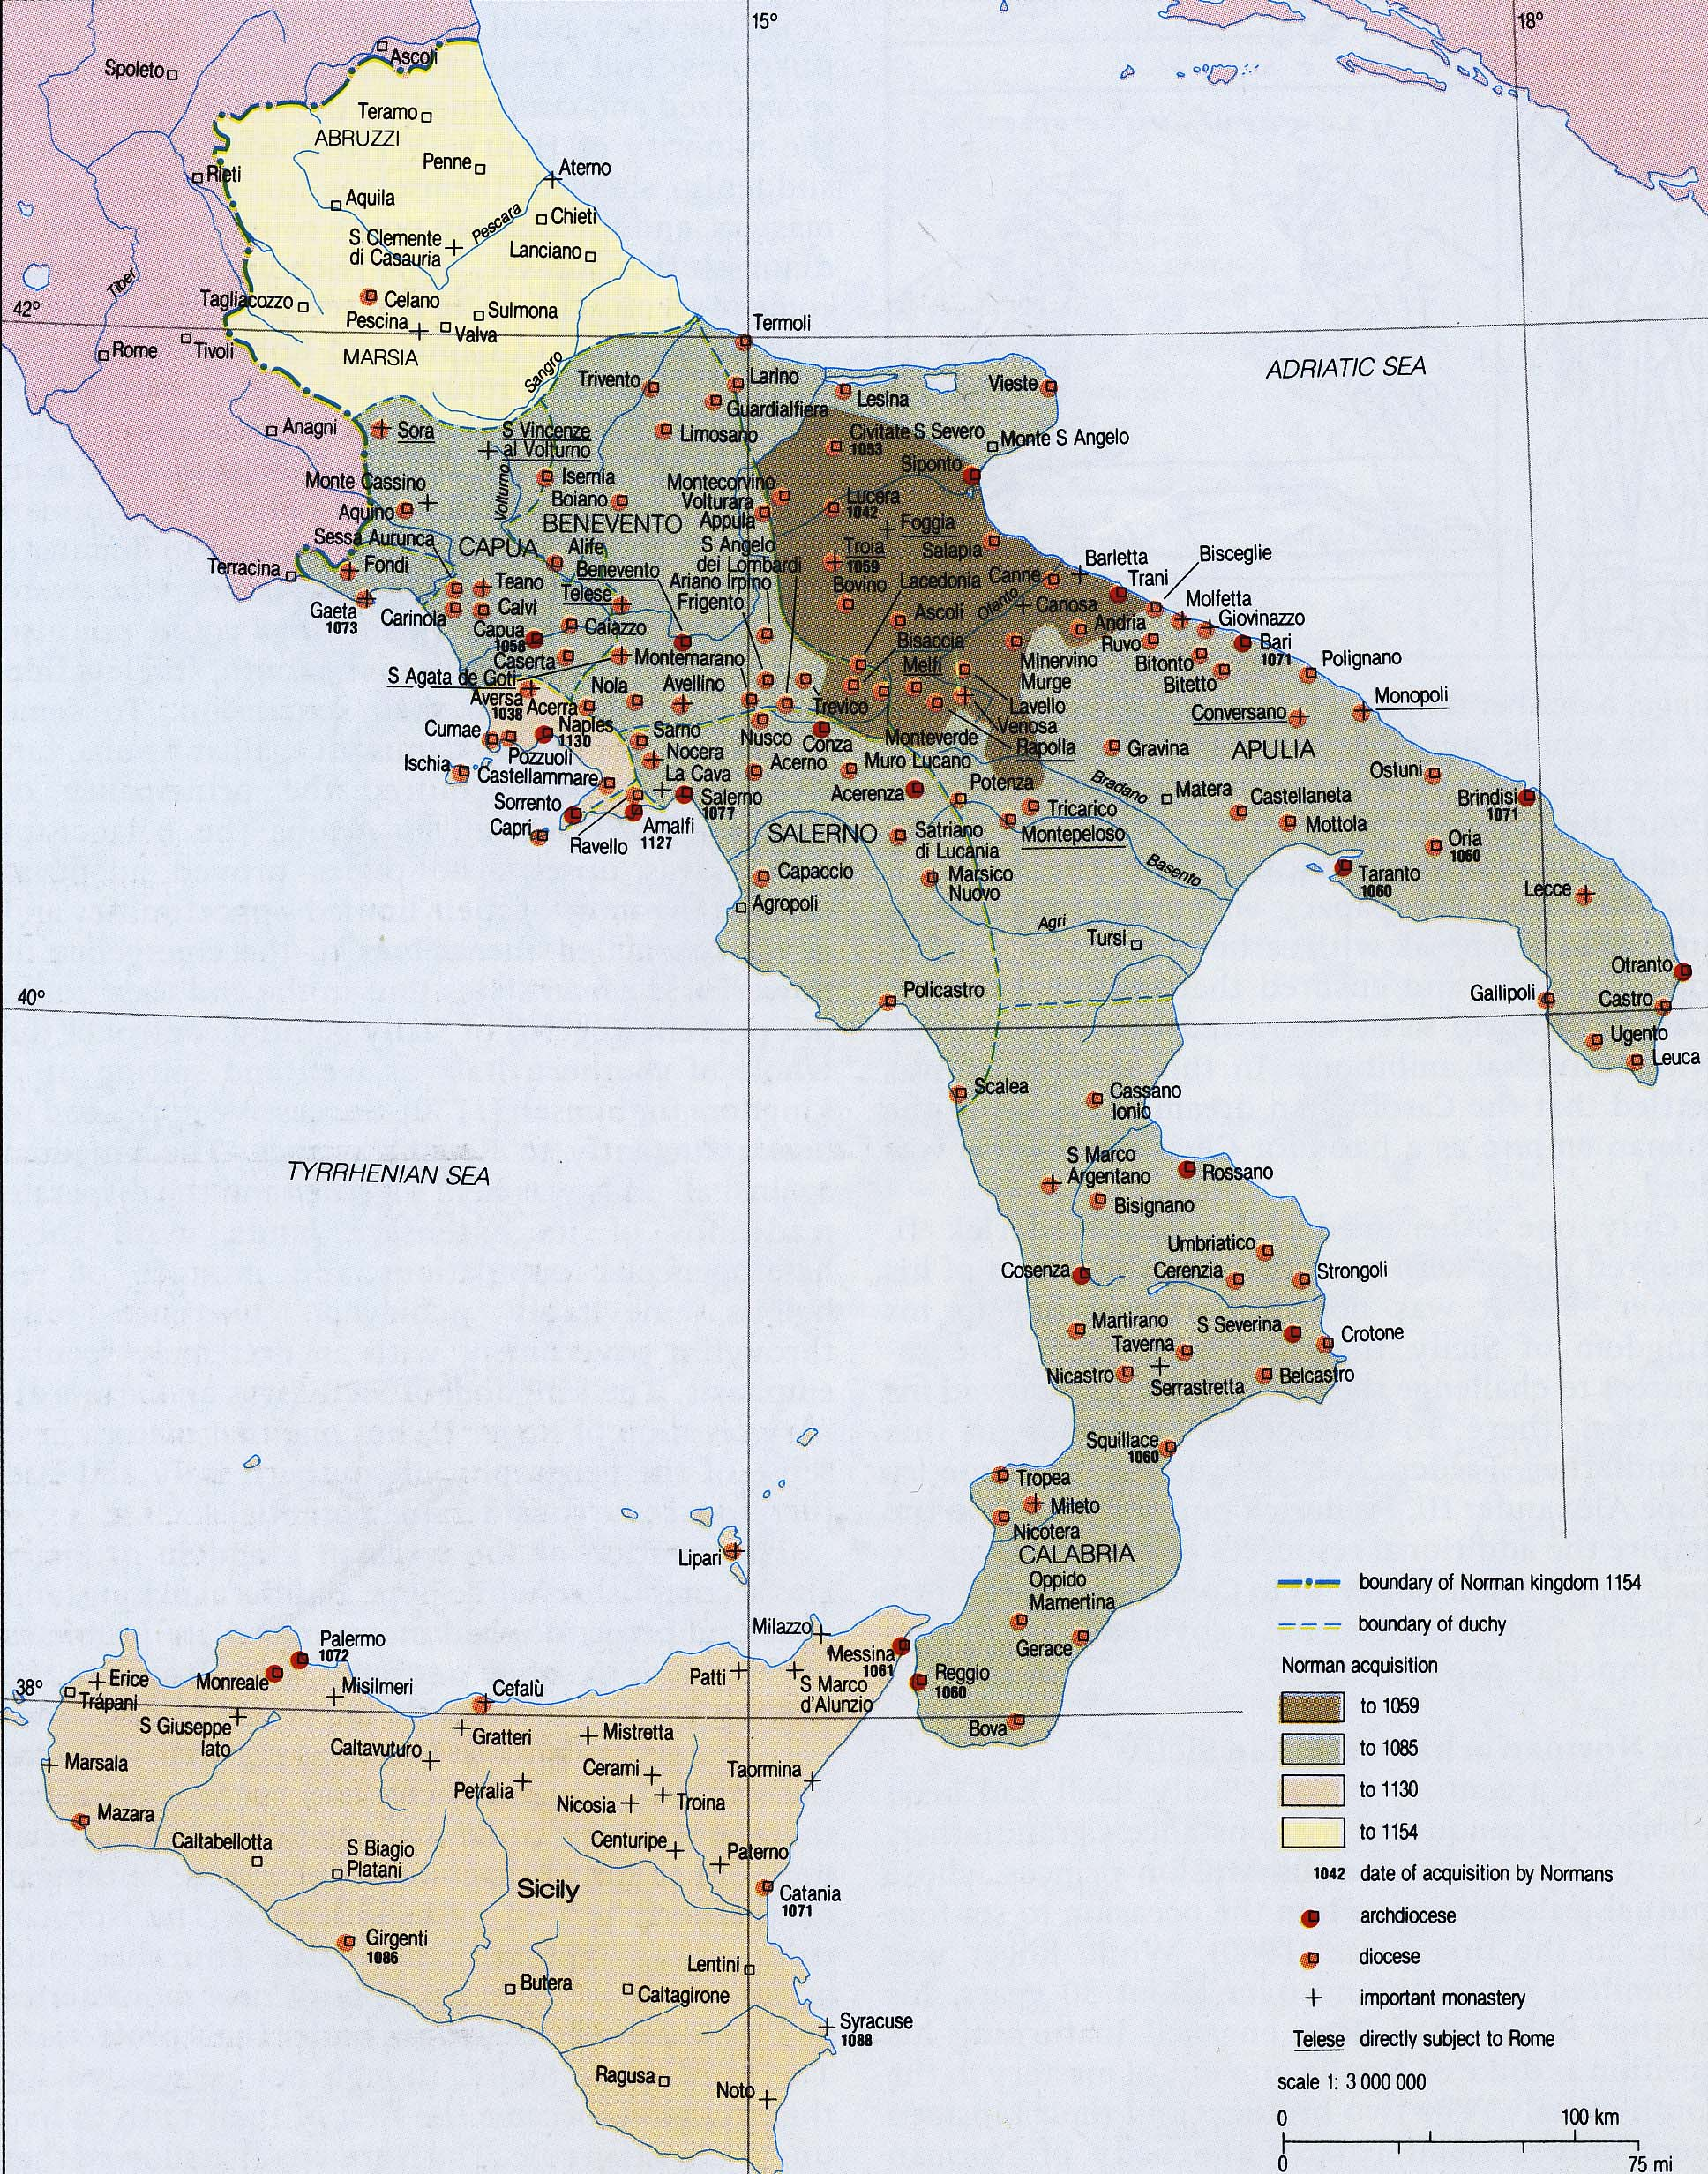 Dominios normandos en el sur de la península italiana. Fuente Universidad de Oregón